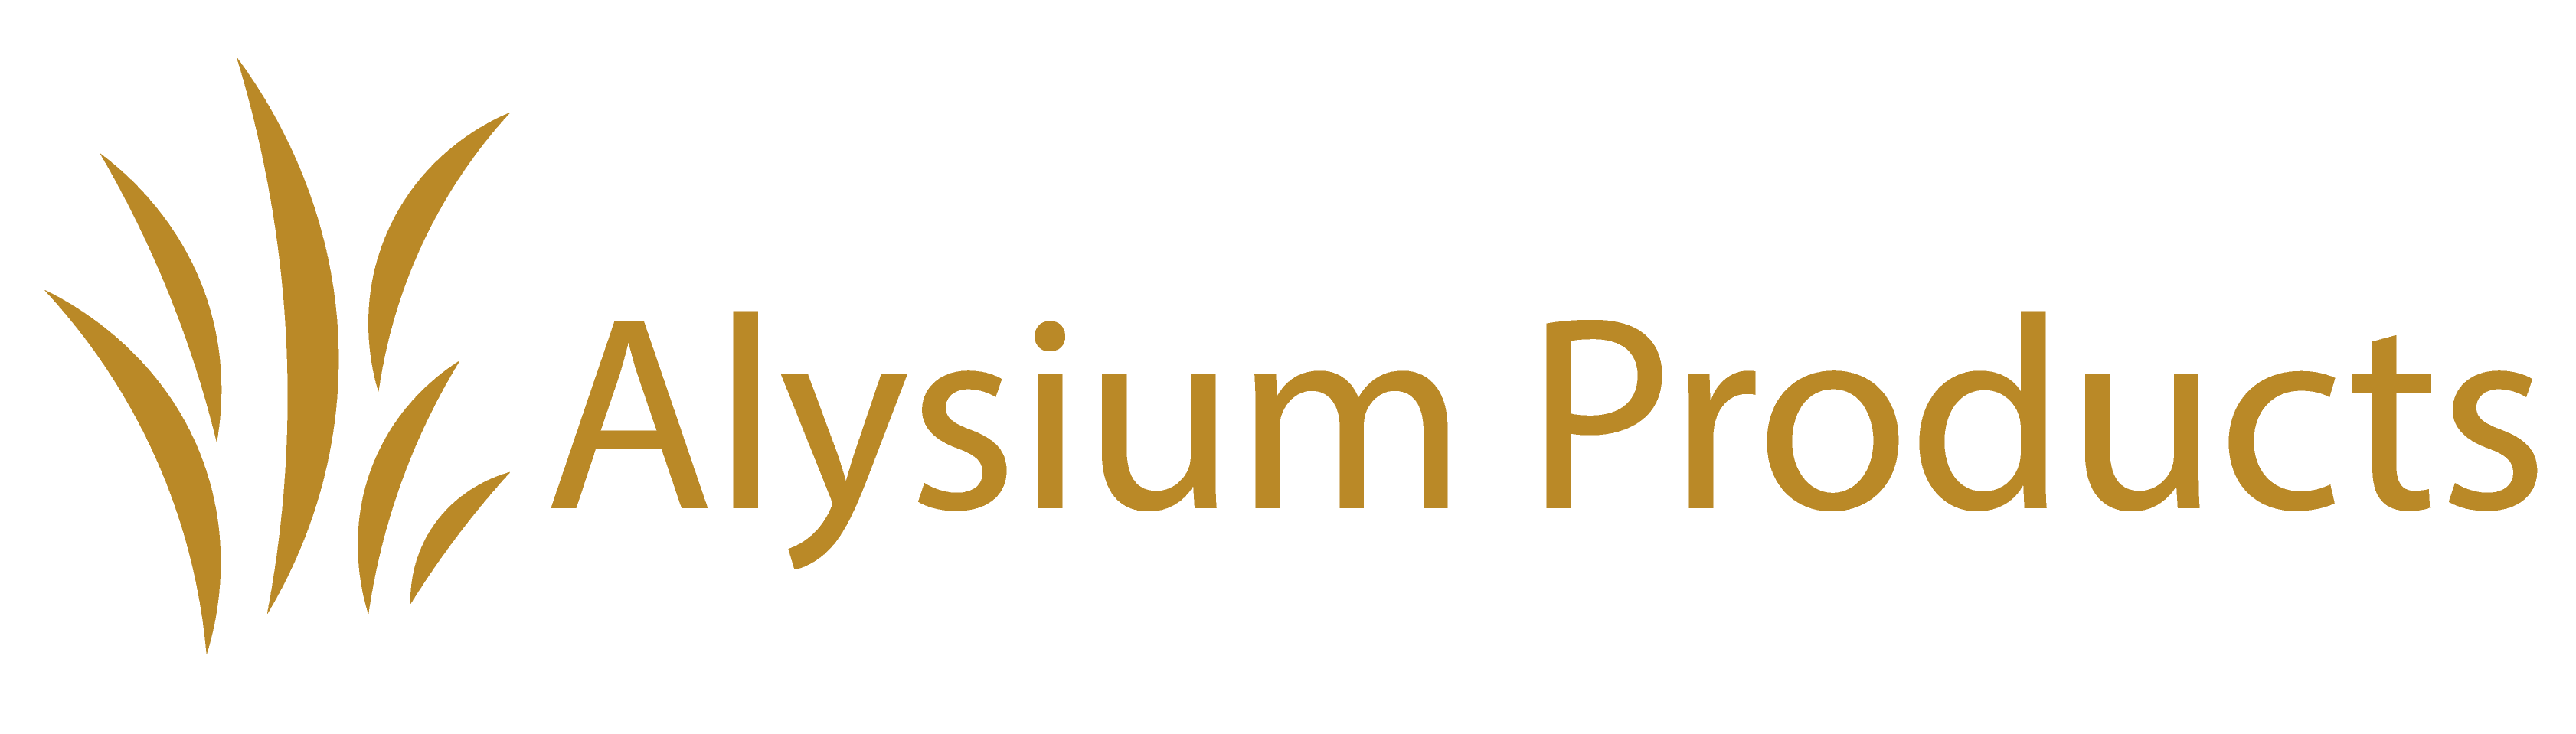 Alysium Products